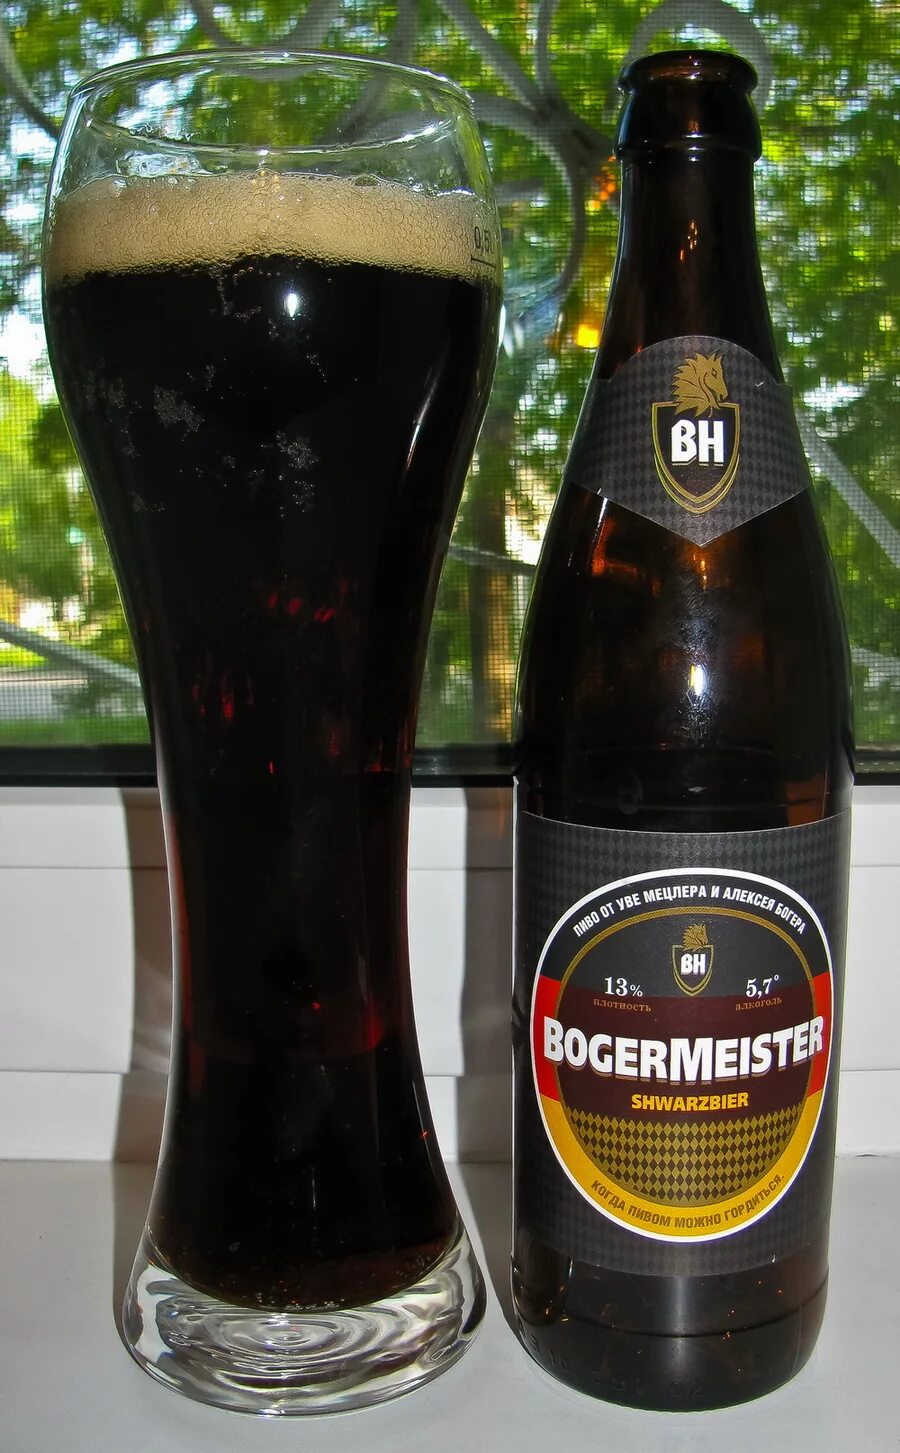 Einsiedler Schwarzbier пиво. Немецкое черное пиво Шварц бир. Бельгийский темный Эль. Бельгийский Эль пиво.